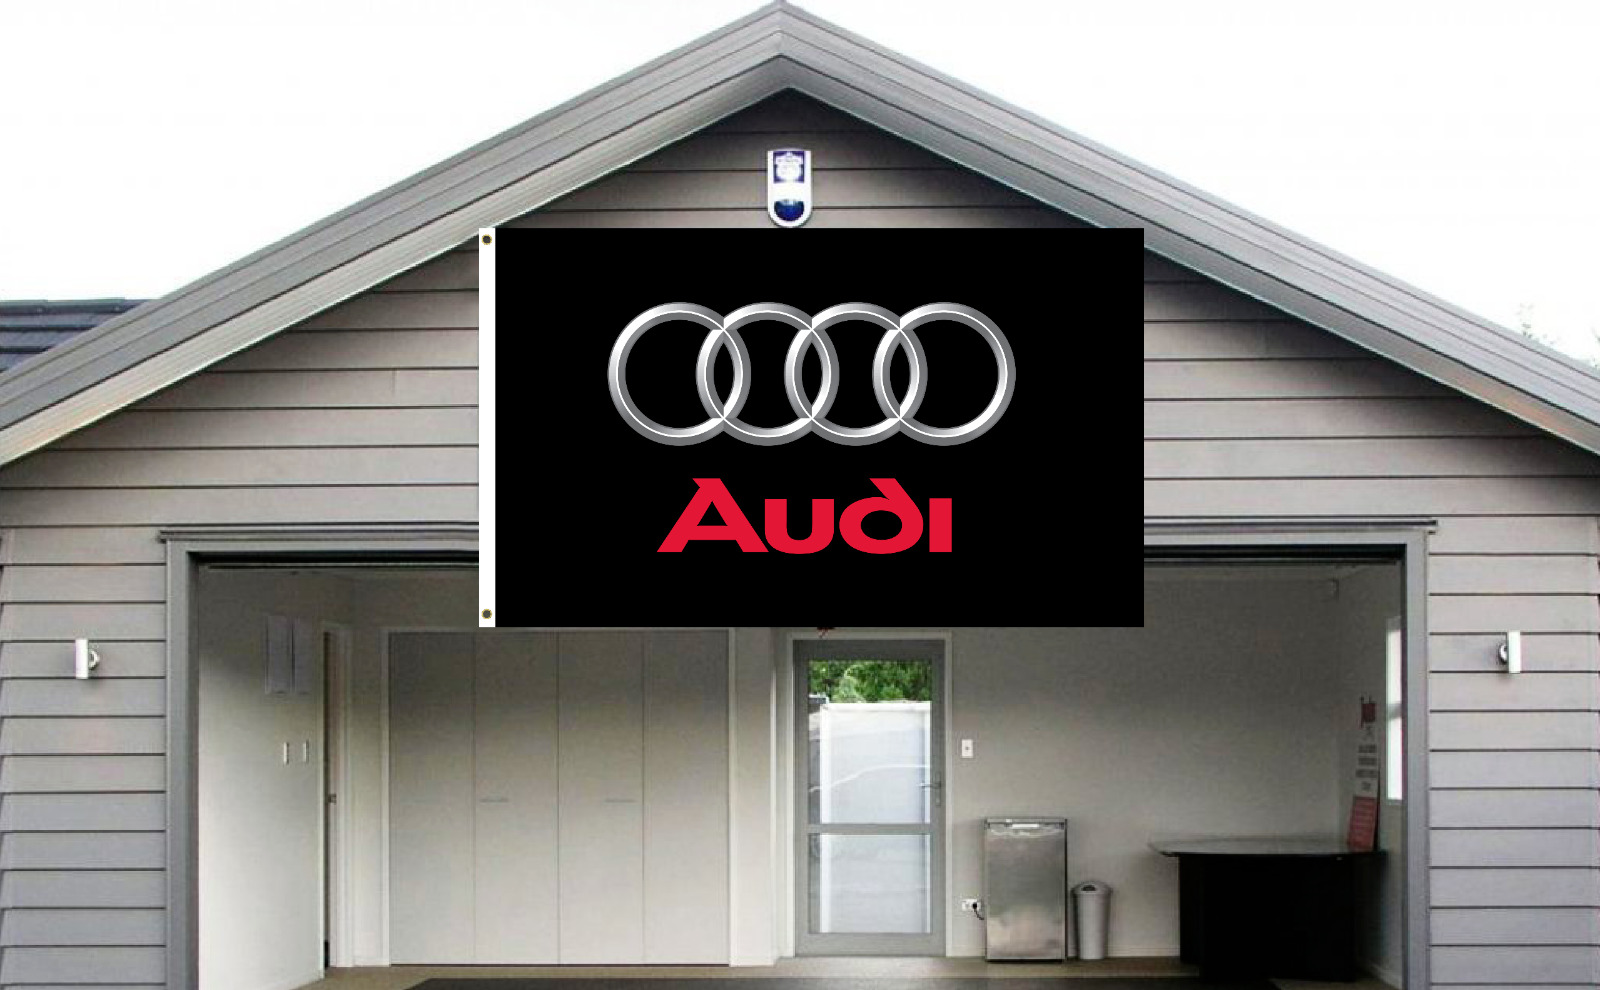 Audi Flag Banner 3x5ft German Racing Car Manufacturer Black For Garage US Seller